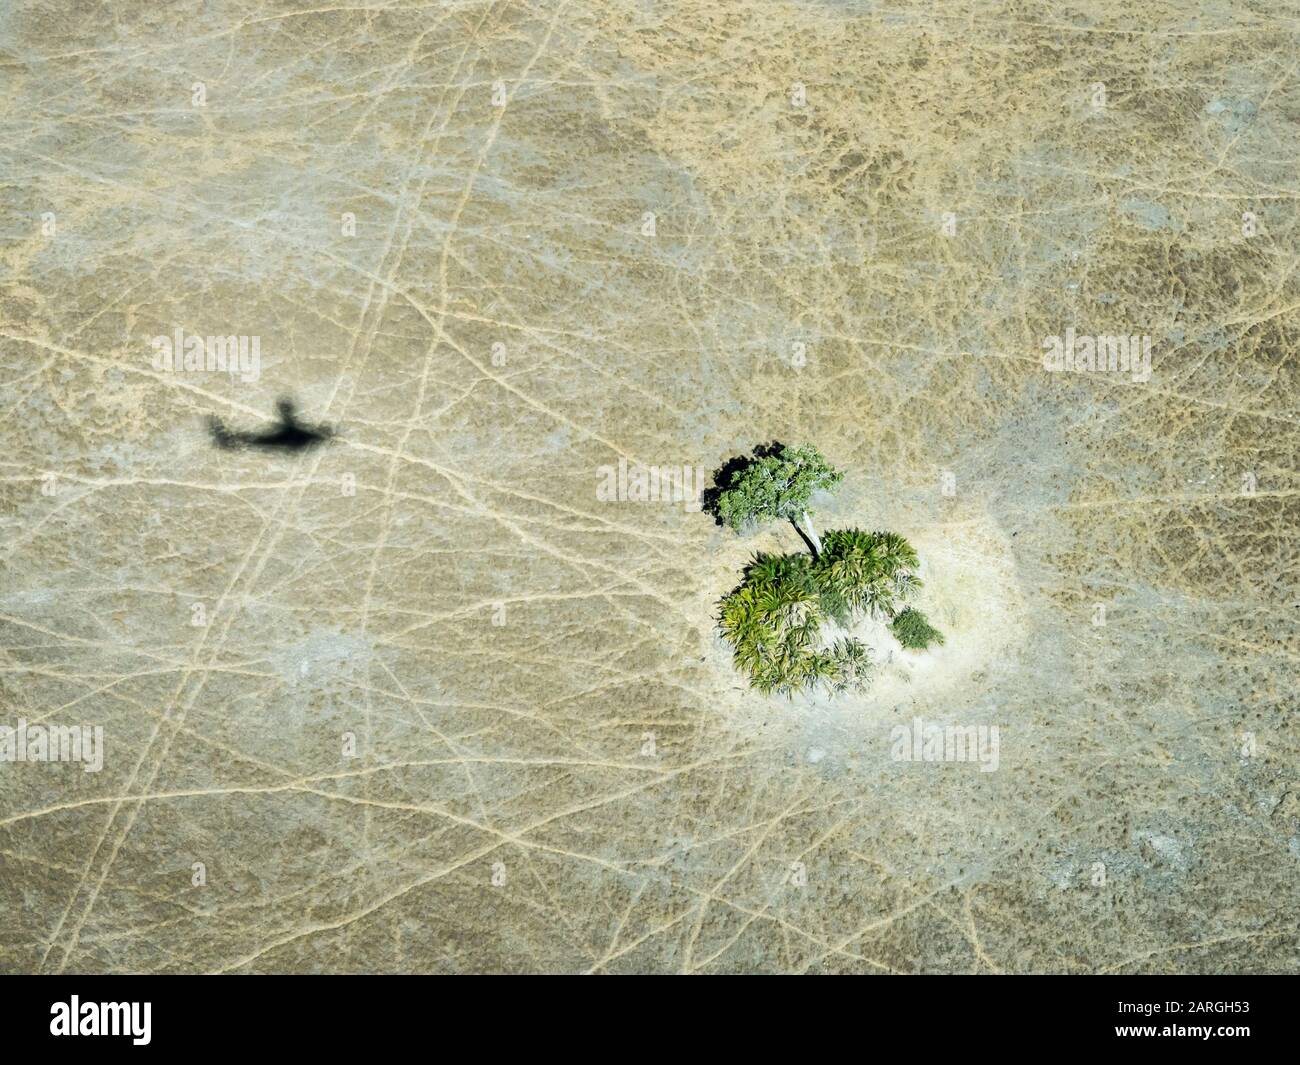 Vista aérea del delta del Okavango durante las condiciones de sequía a principios del otoño, Botswana, África Foto de stock